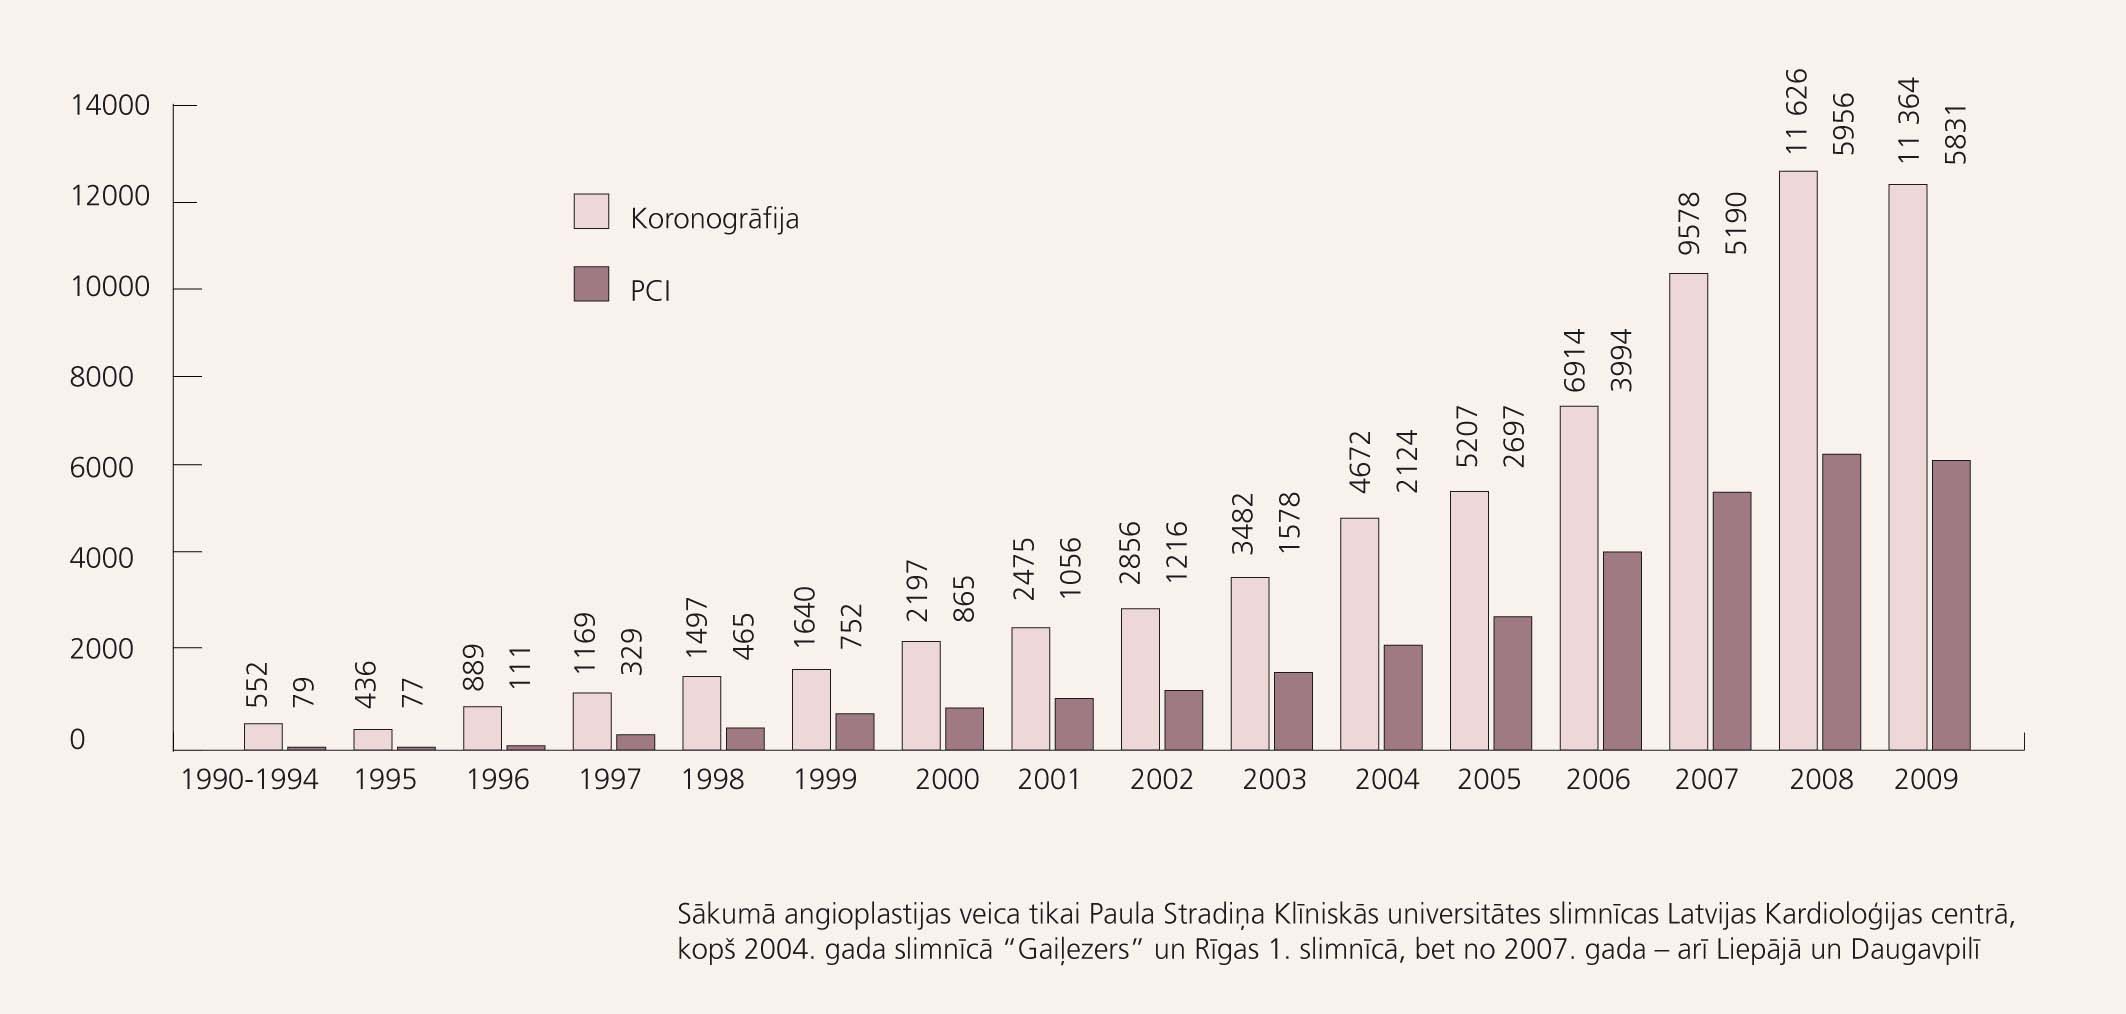 Koronāro angiogrāfiju un perkutānu koronāru intervenču (PCI) skaits Latvijā